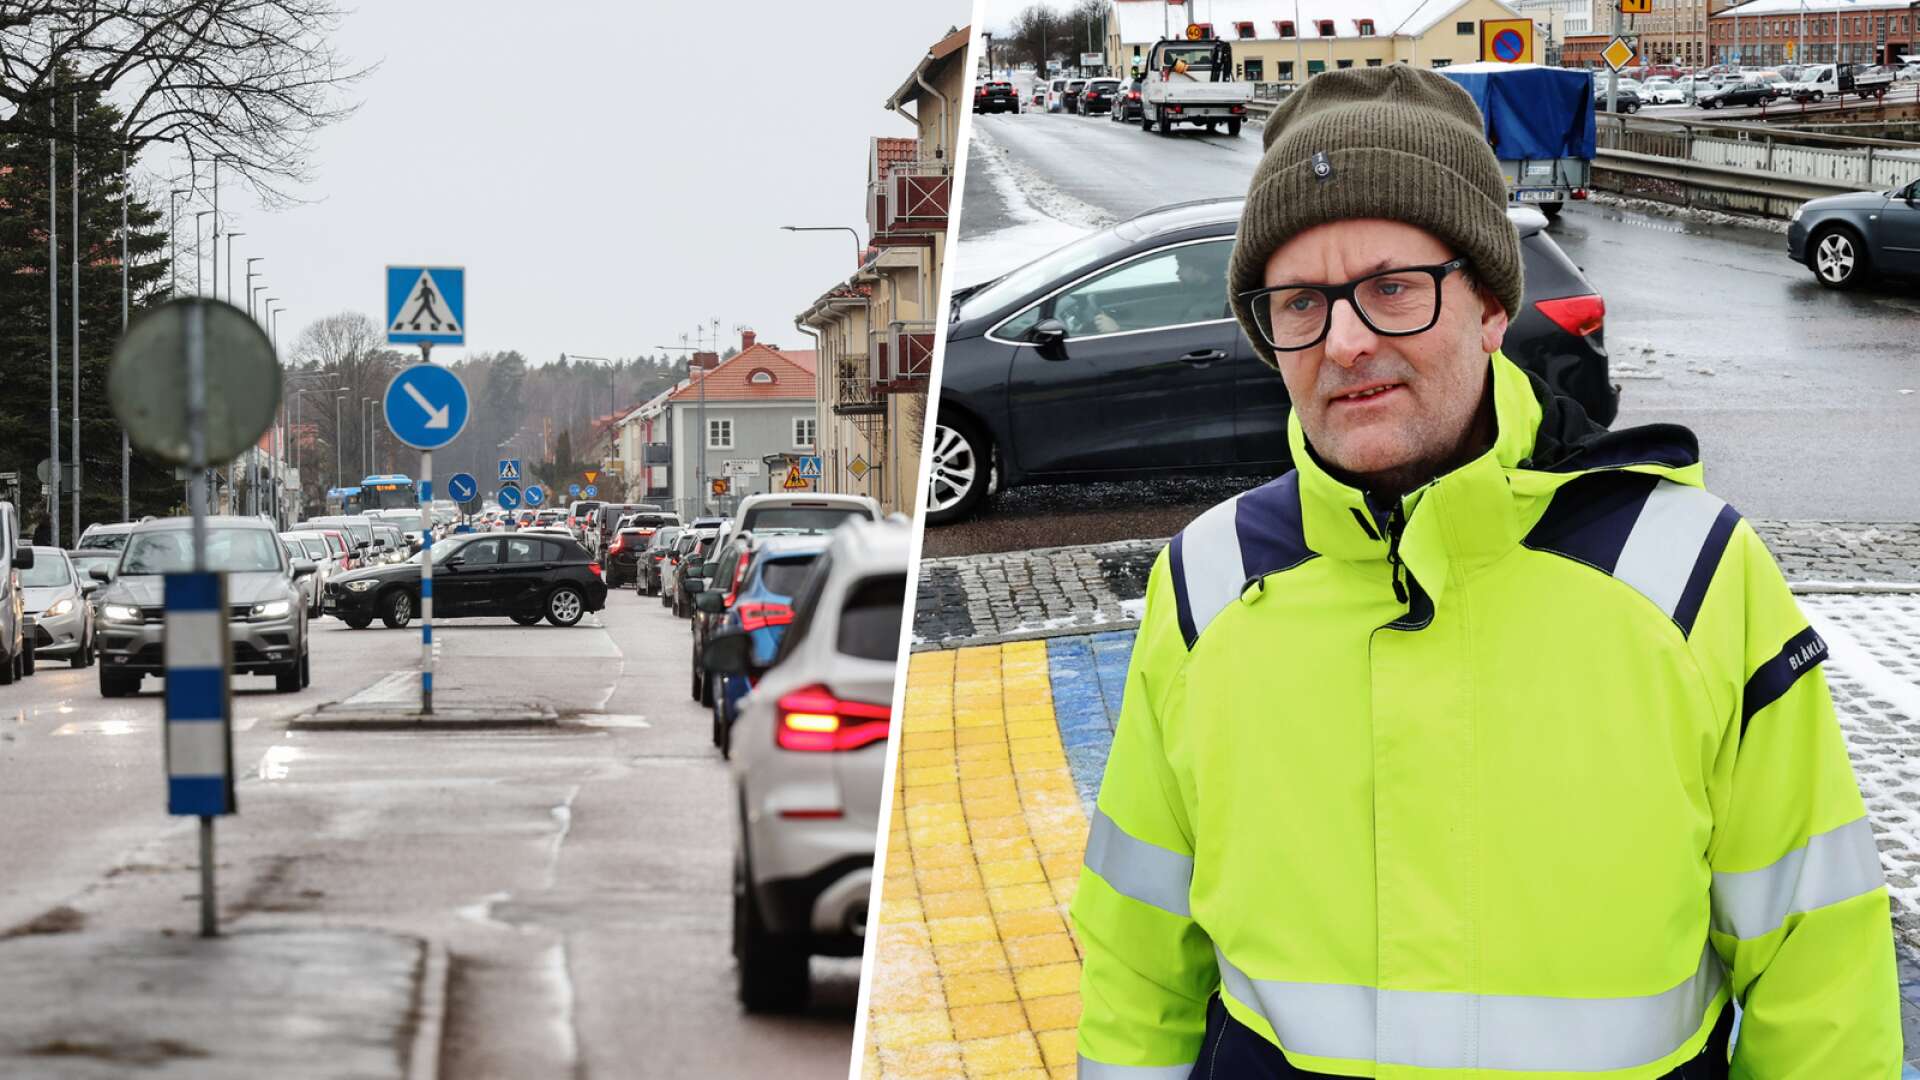 Områdeschef Johan Bengtsson om trafikkaoset i Lidköping • Vädjar till bilisterna att ha tålamod